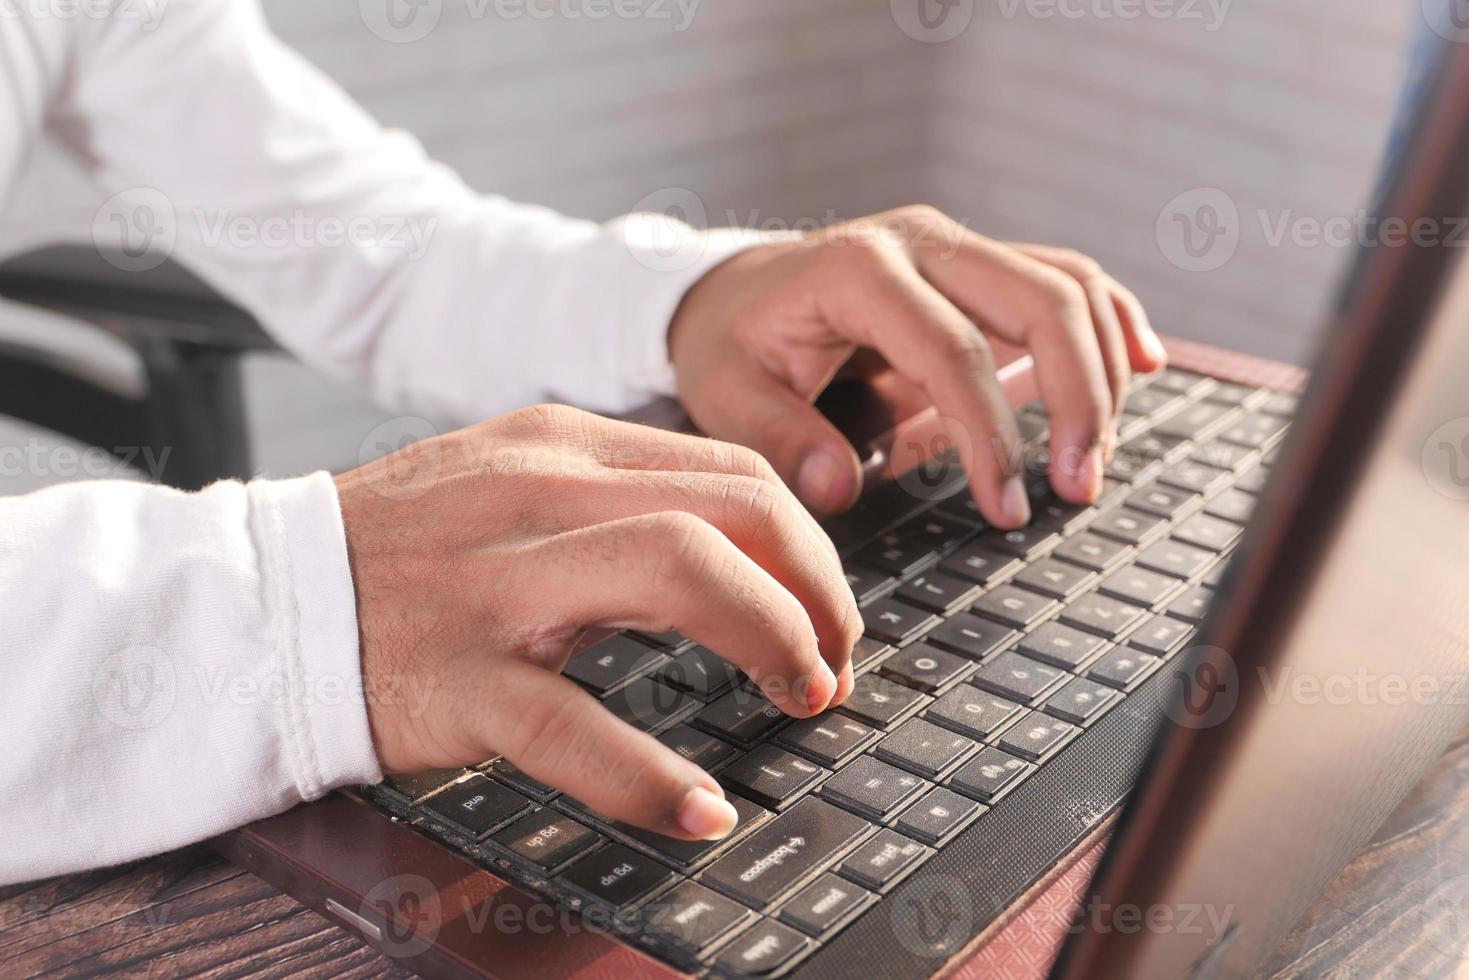 perto da mão do homem digitando no laptop foto